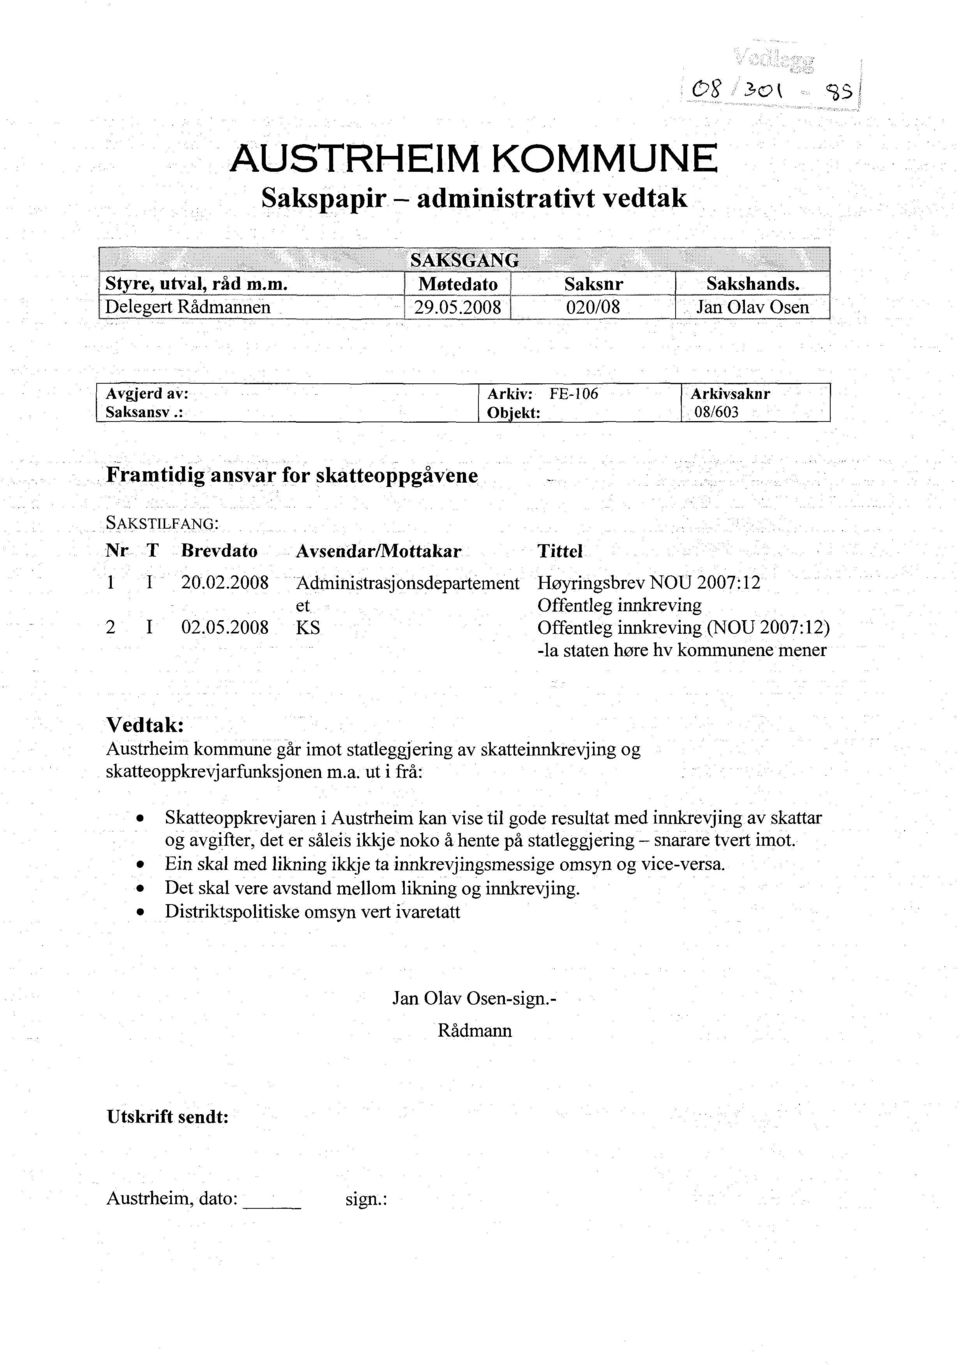 2008 Administrasjonsdepartement Høyringsbrev NOU 2007:12 et Offentleg innkreving 02.05.